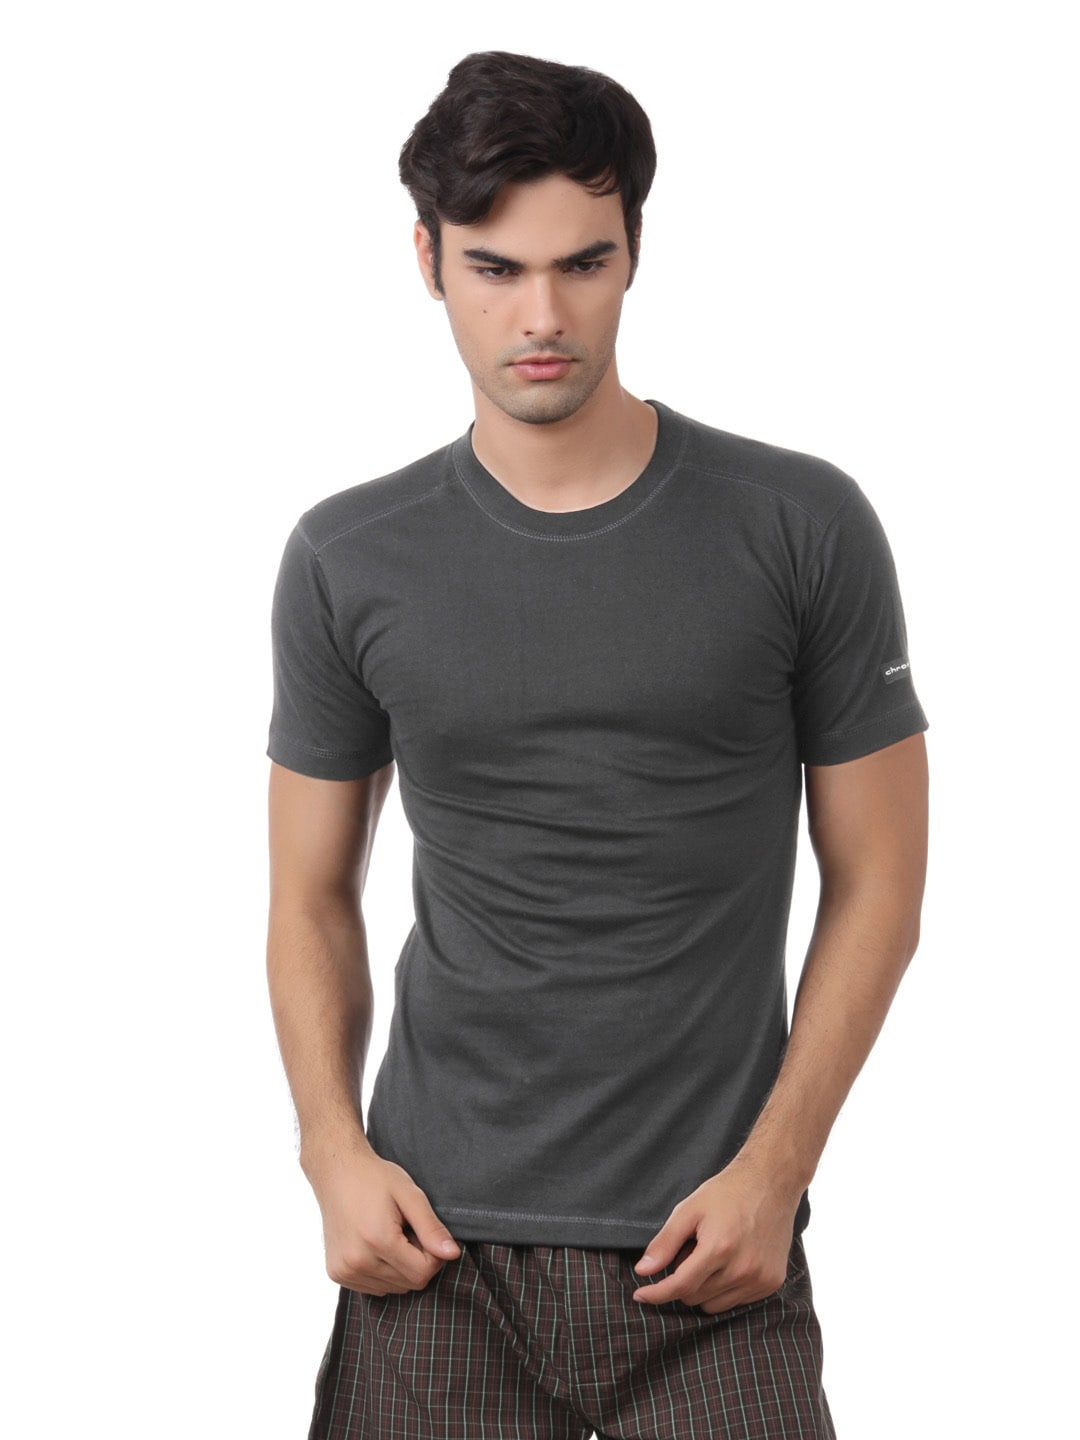 Chromozome Men Charcoal Melange Innerwear T-shirt